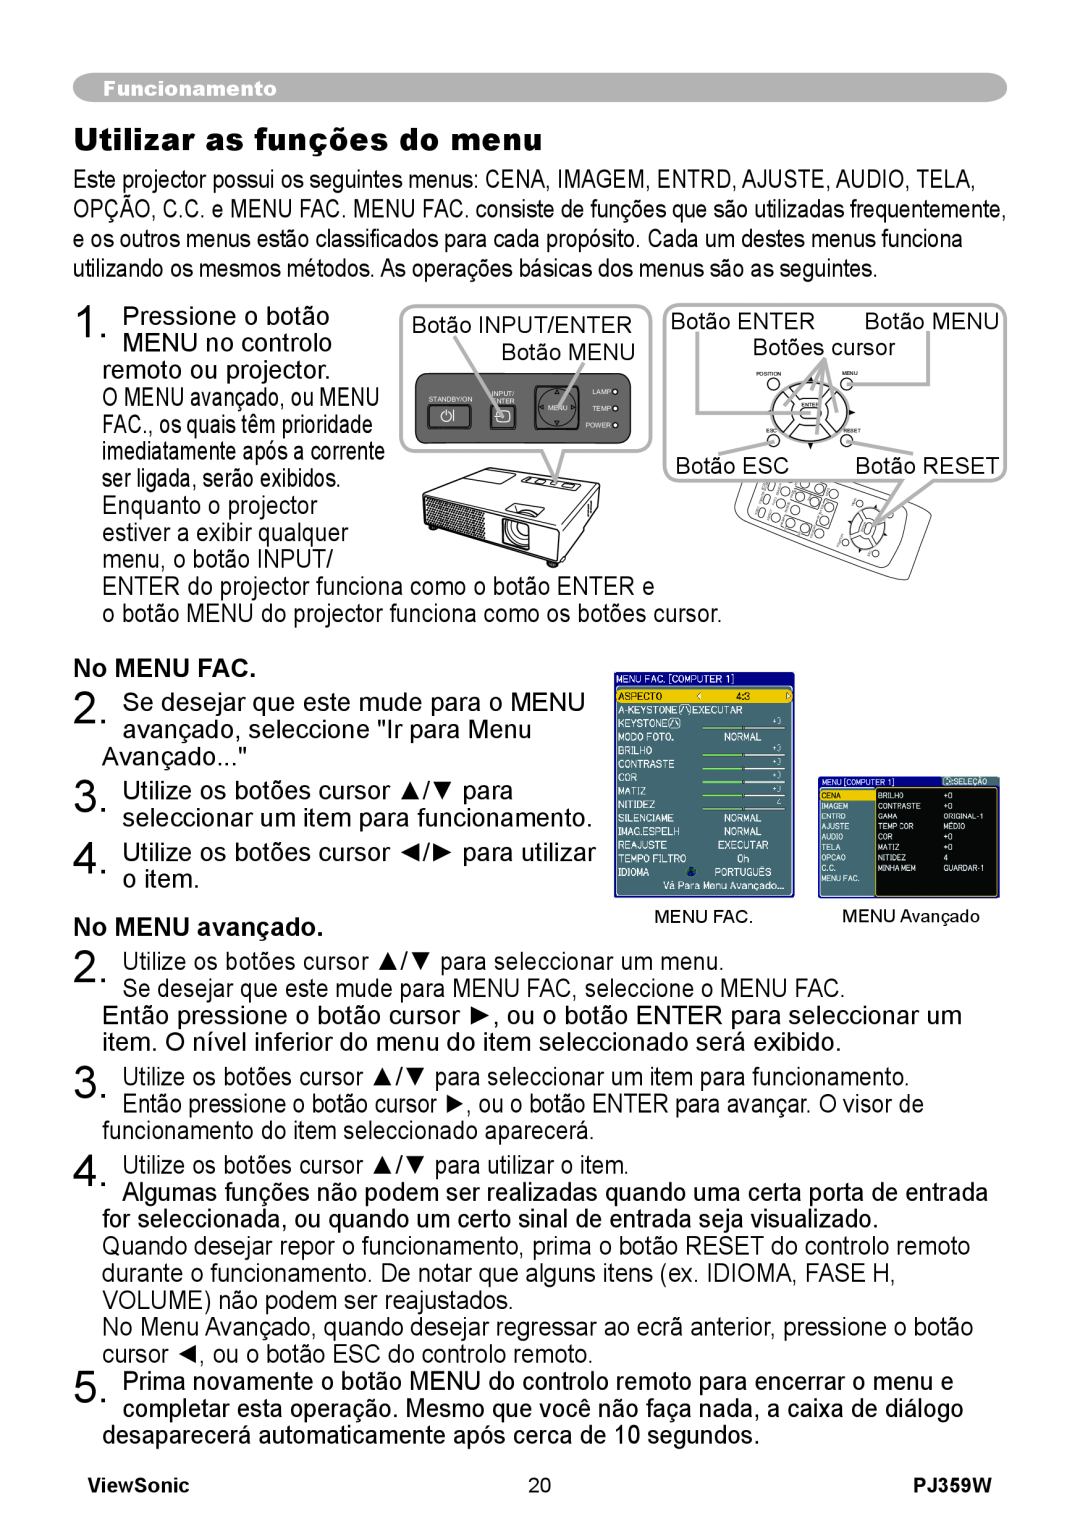 ViewSonic PJ359 manual Utilizar as funções do menu, No MENU FAC, No MENU avançado 